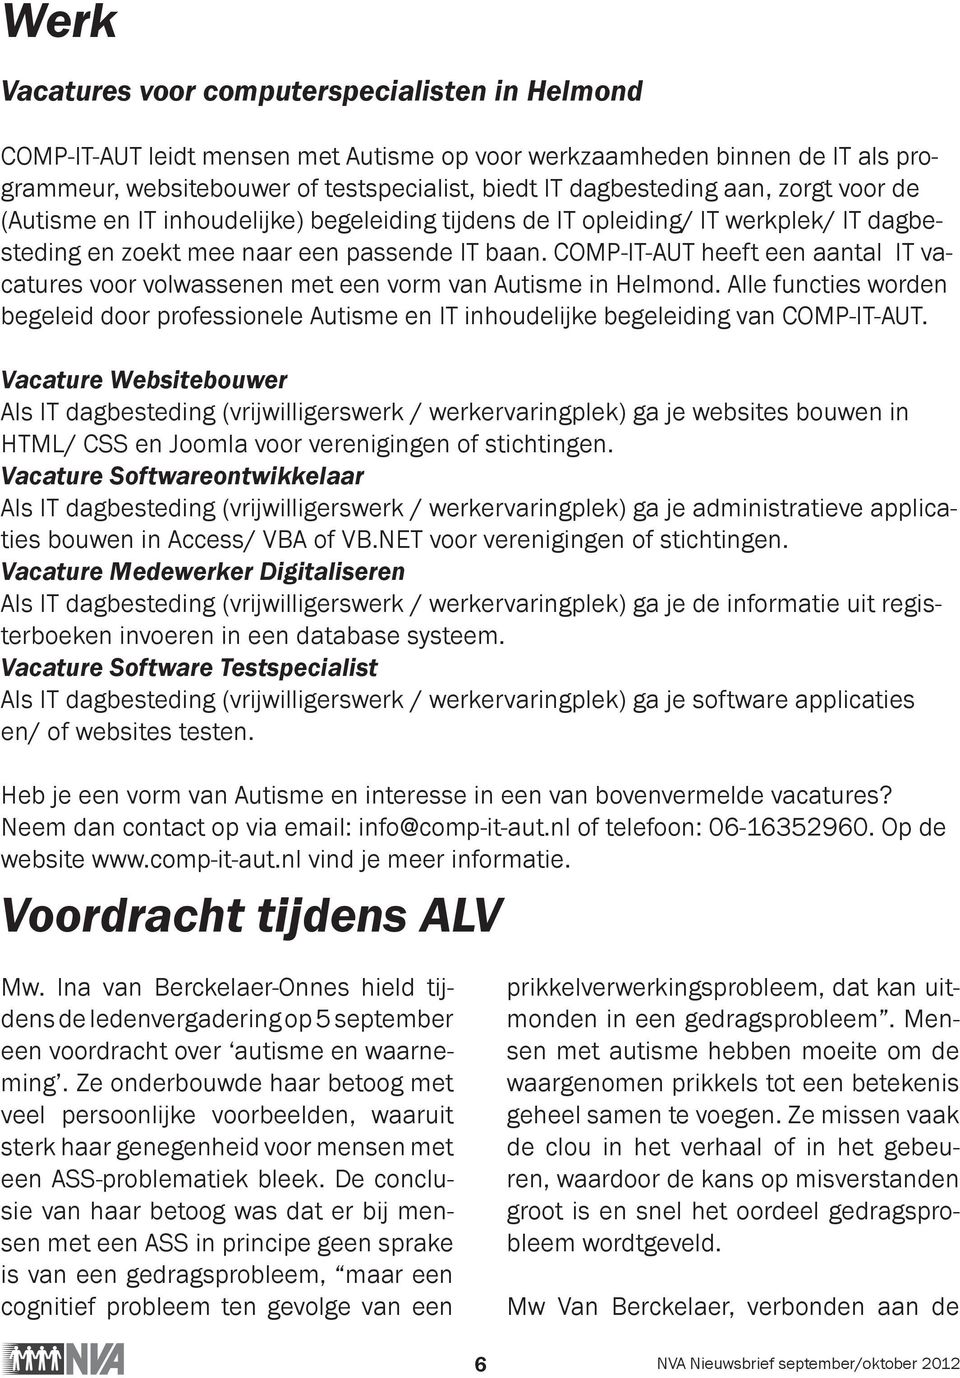 COMP-IT-AUT heeft een aantal IT vacatures voor volwassenen met een vorm van Autisme in Helmond. Alle functies worden begeleid door professionele Autisme en IT inhoudelijke begeleiding van COMP-IT-AUT.